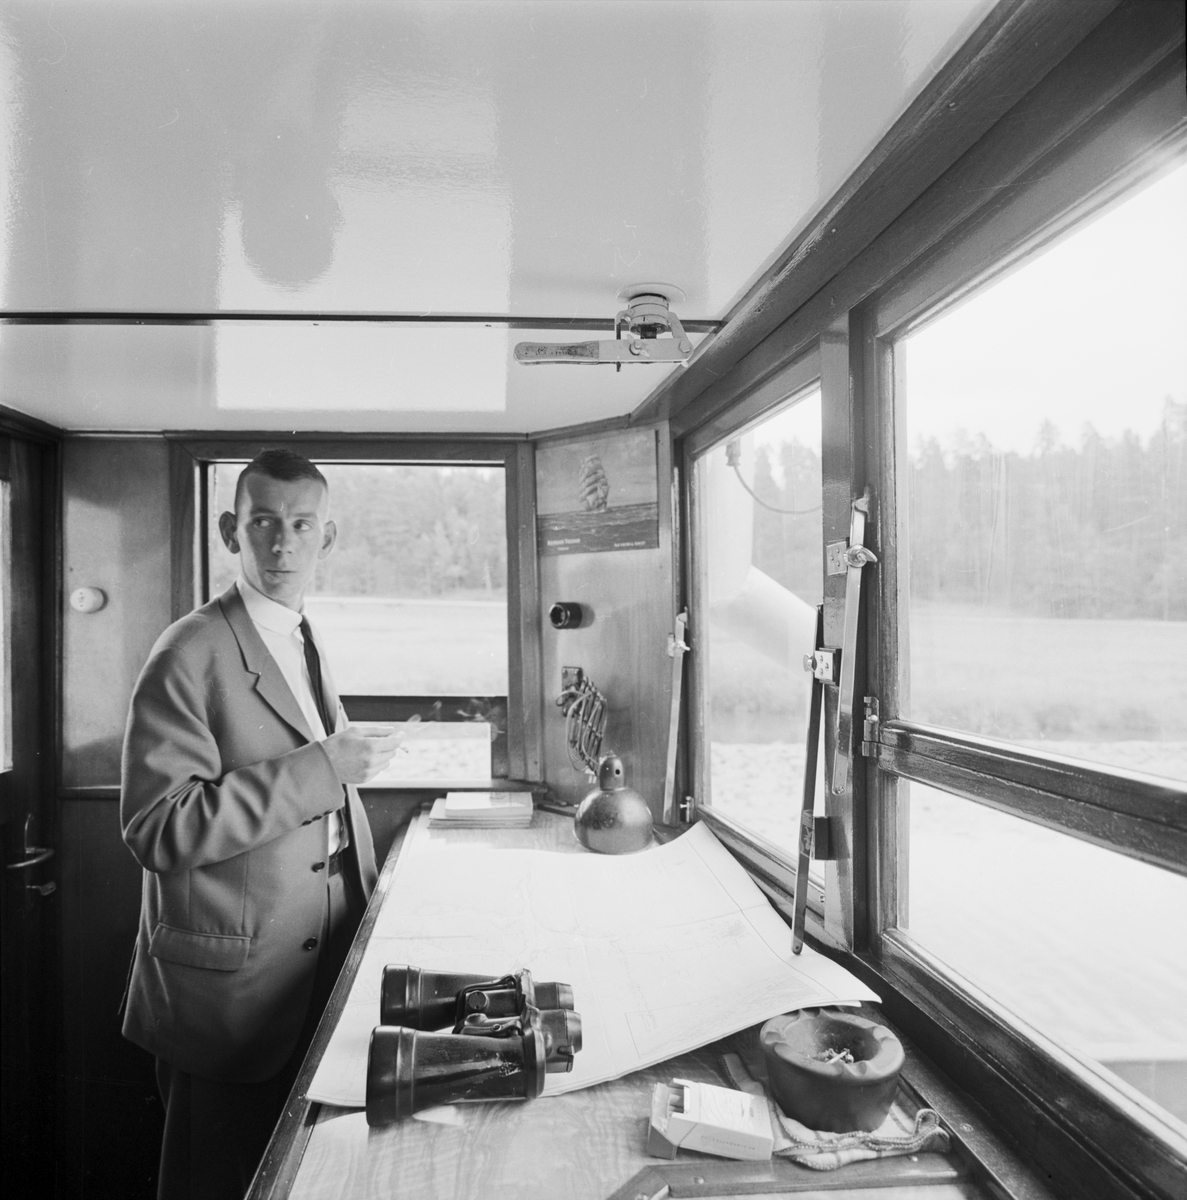 Ombord på "Annaliese Wehlen" från Hamburg, Fyrisån, Uppsala 1963